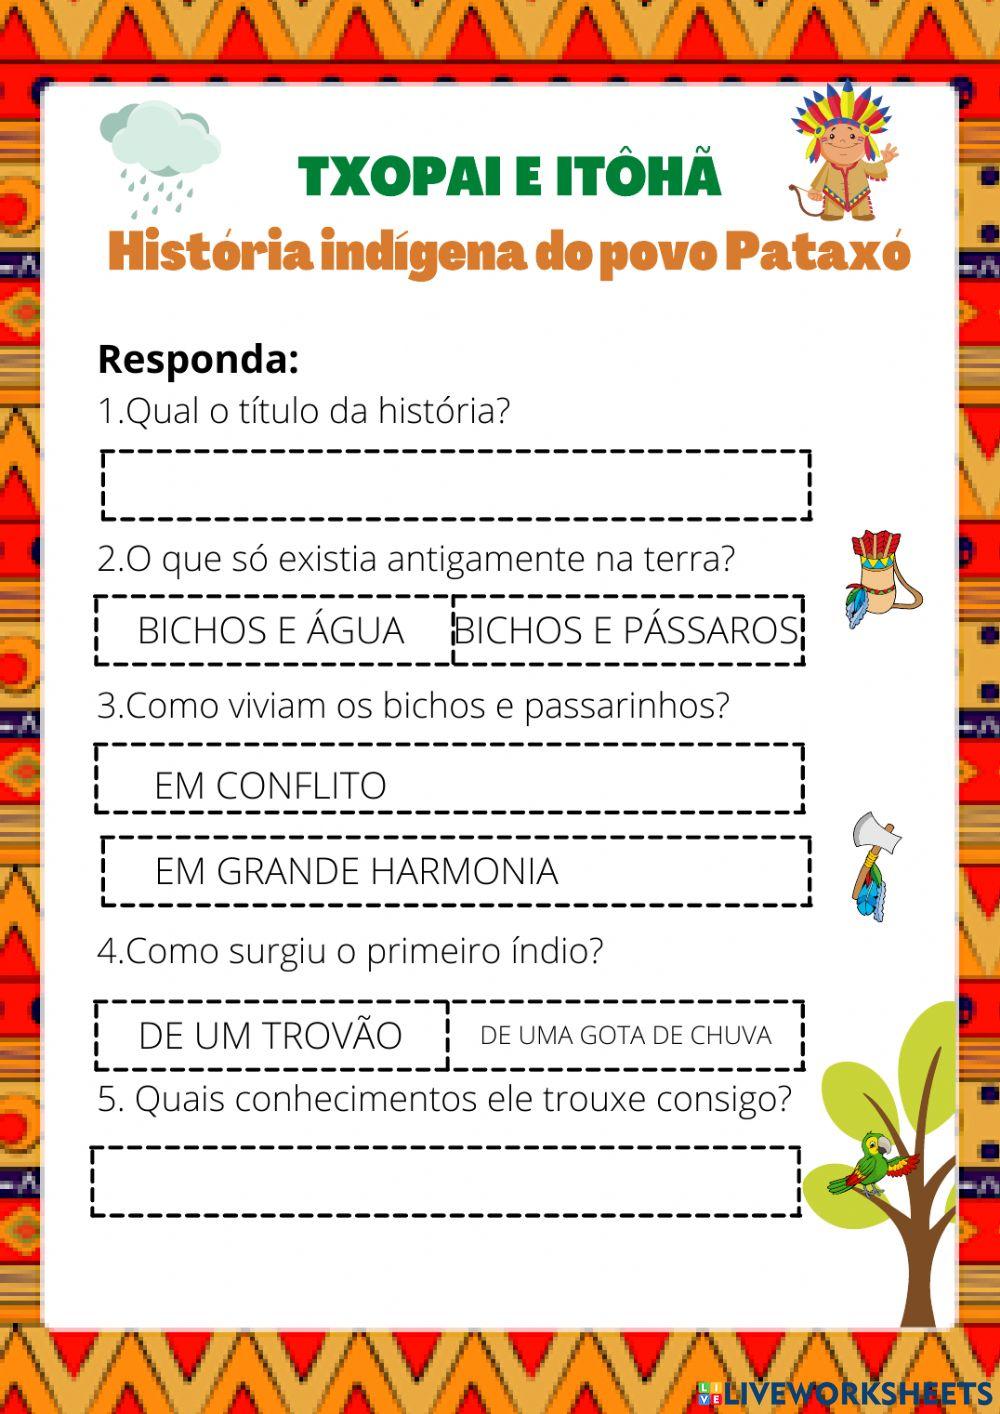 TXOPAI E ITÔHÃ, história indígena do povo Pataxó